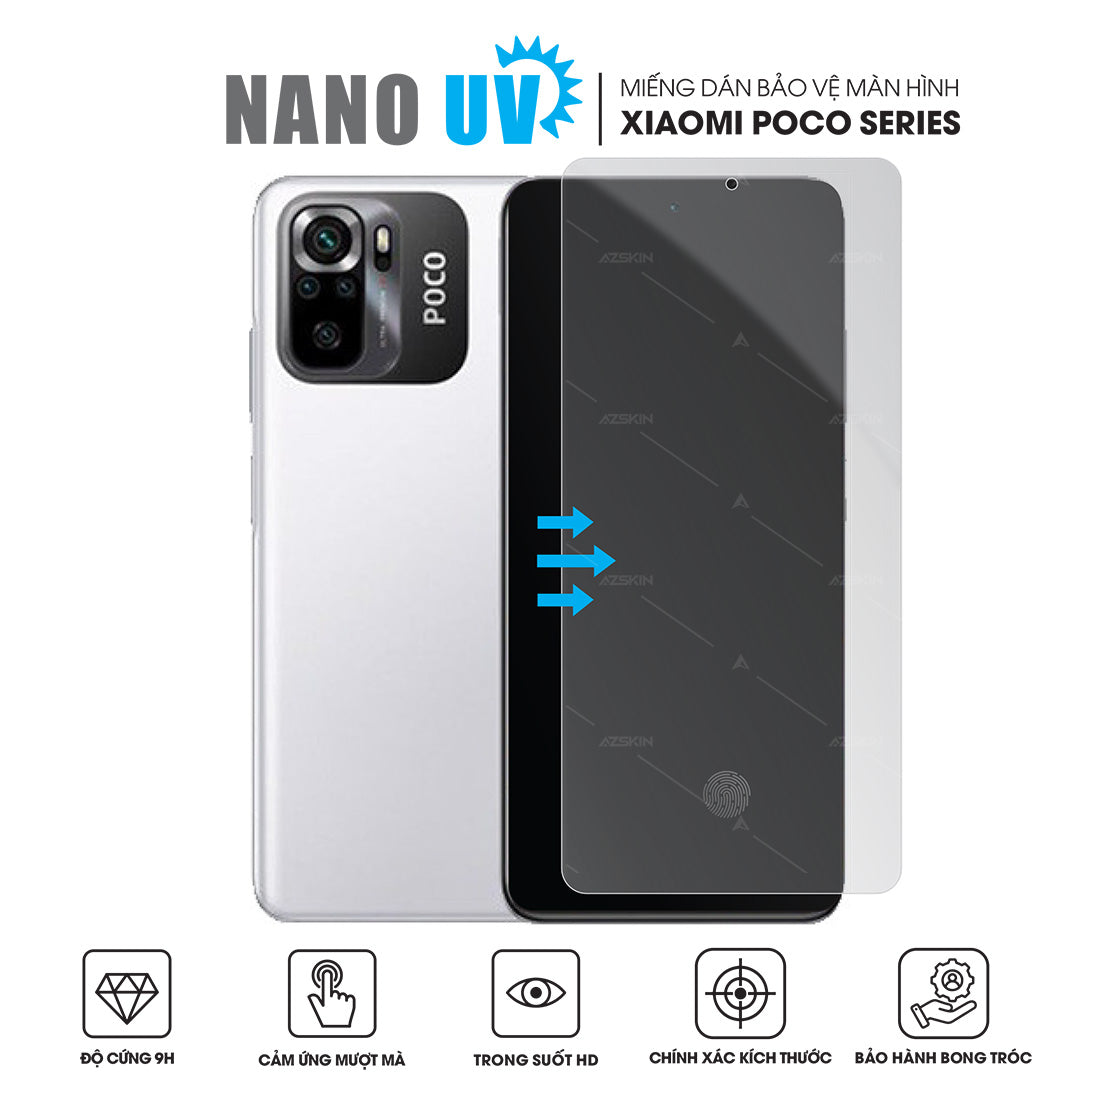 Miếng Dán Màn Hình Nano UV Xiaomi POCO Series